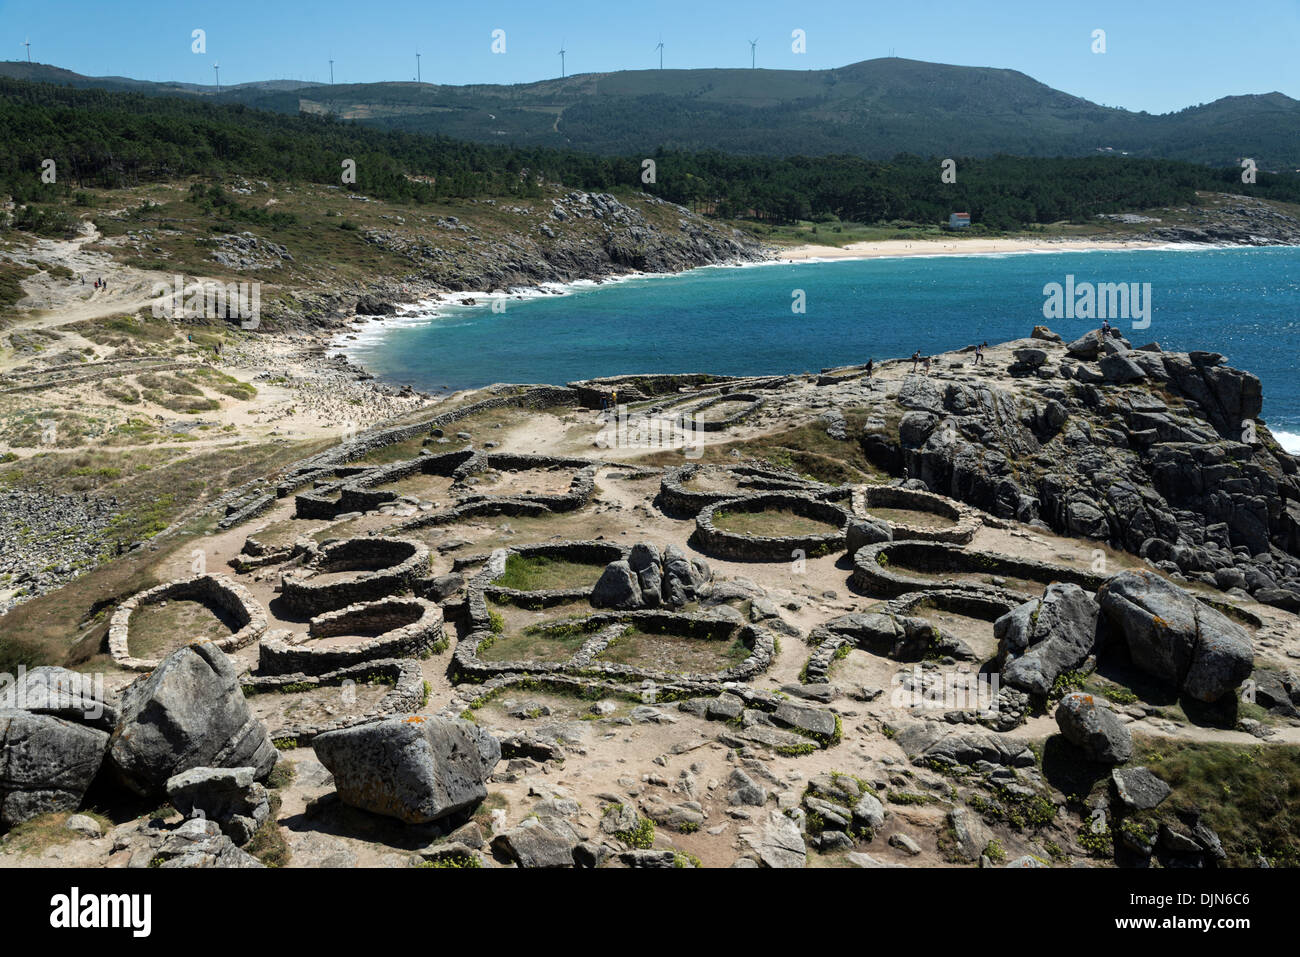 Die keltische Siedlung von Castro de Barona in der Nähe von Porto Son,  Galicien, Spanien Stockfotografie - Alamy